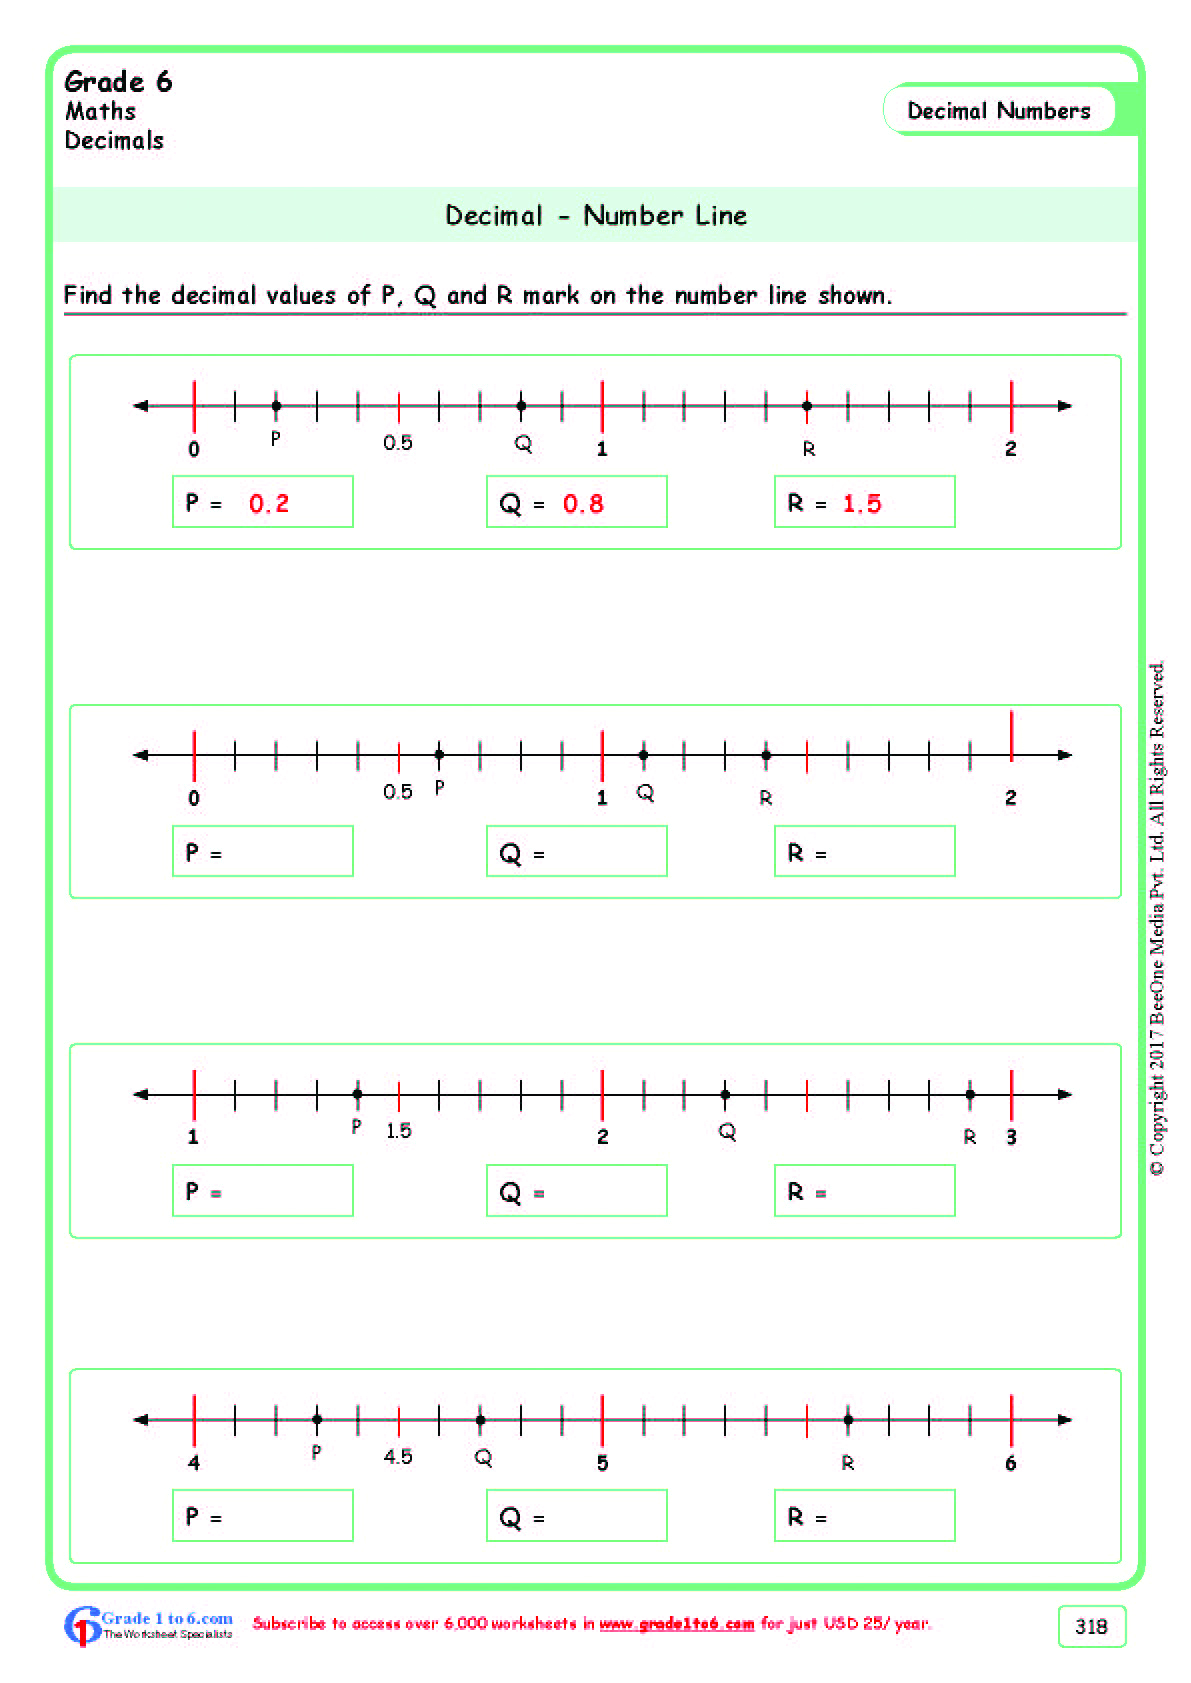 Decimals on a Number Line Worksheets|Grade 6| www.grade1to6.com